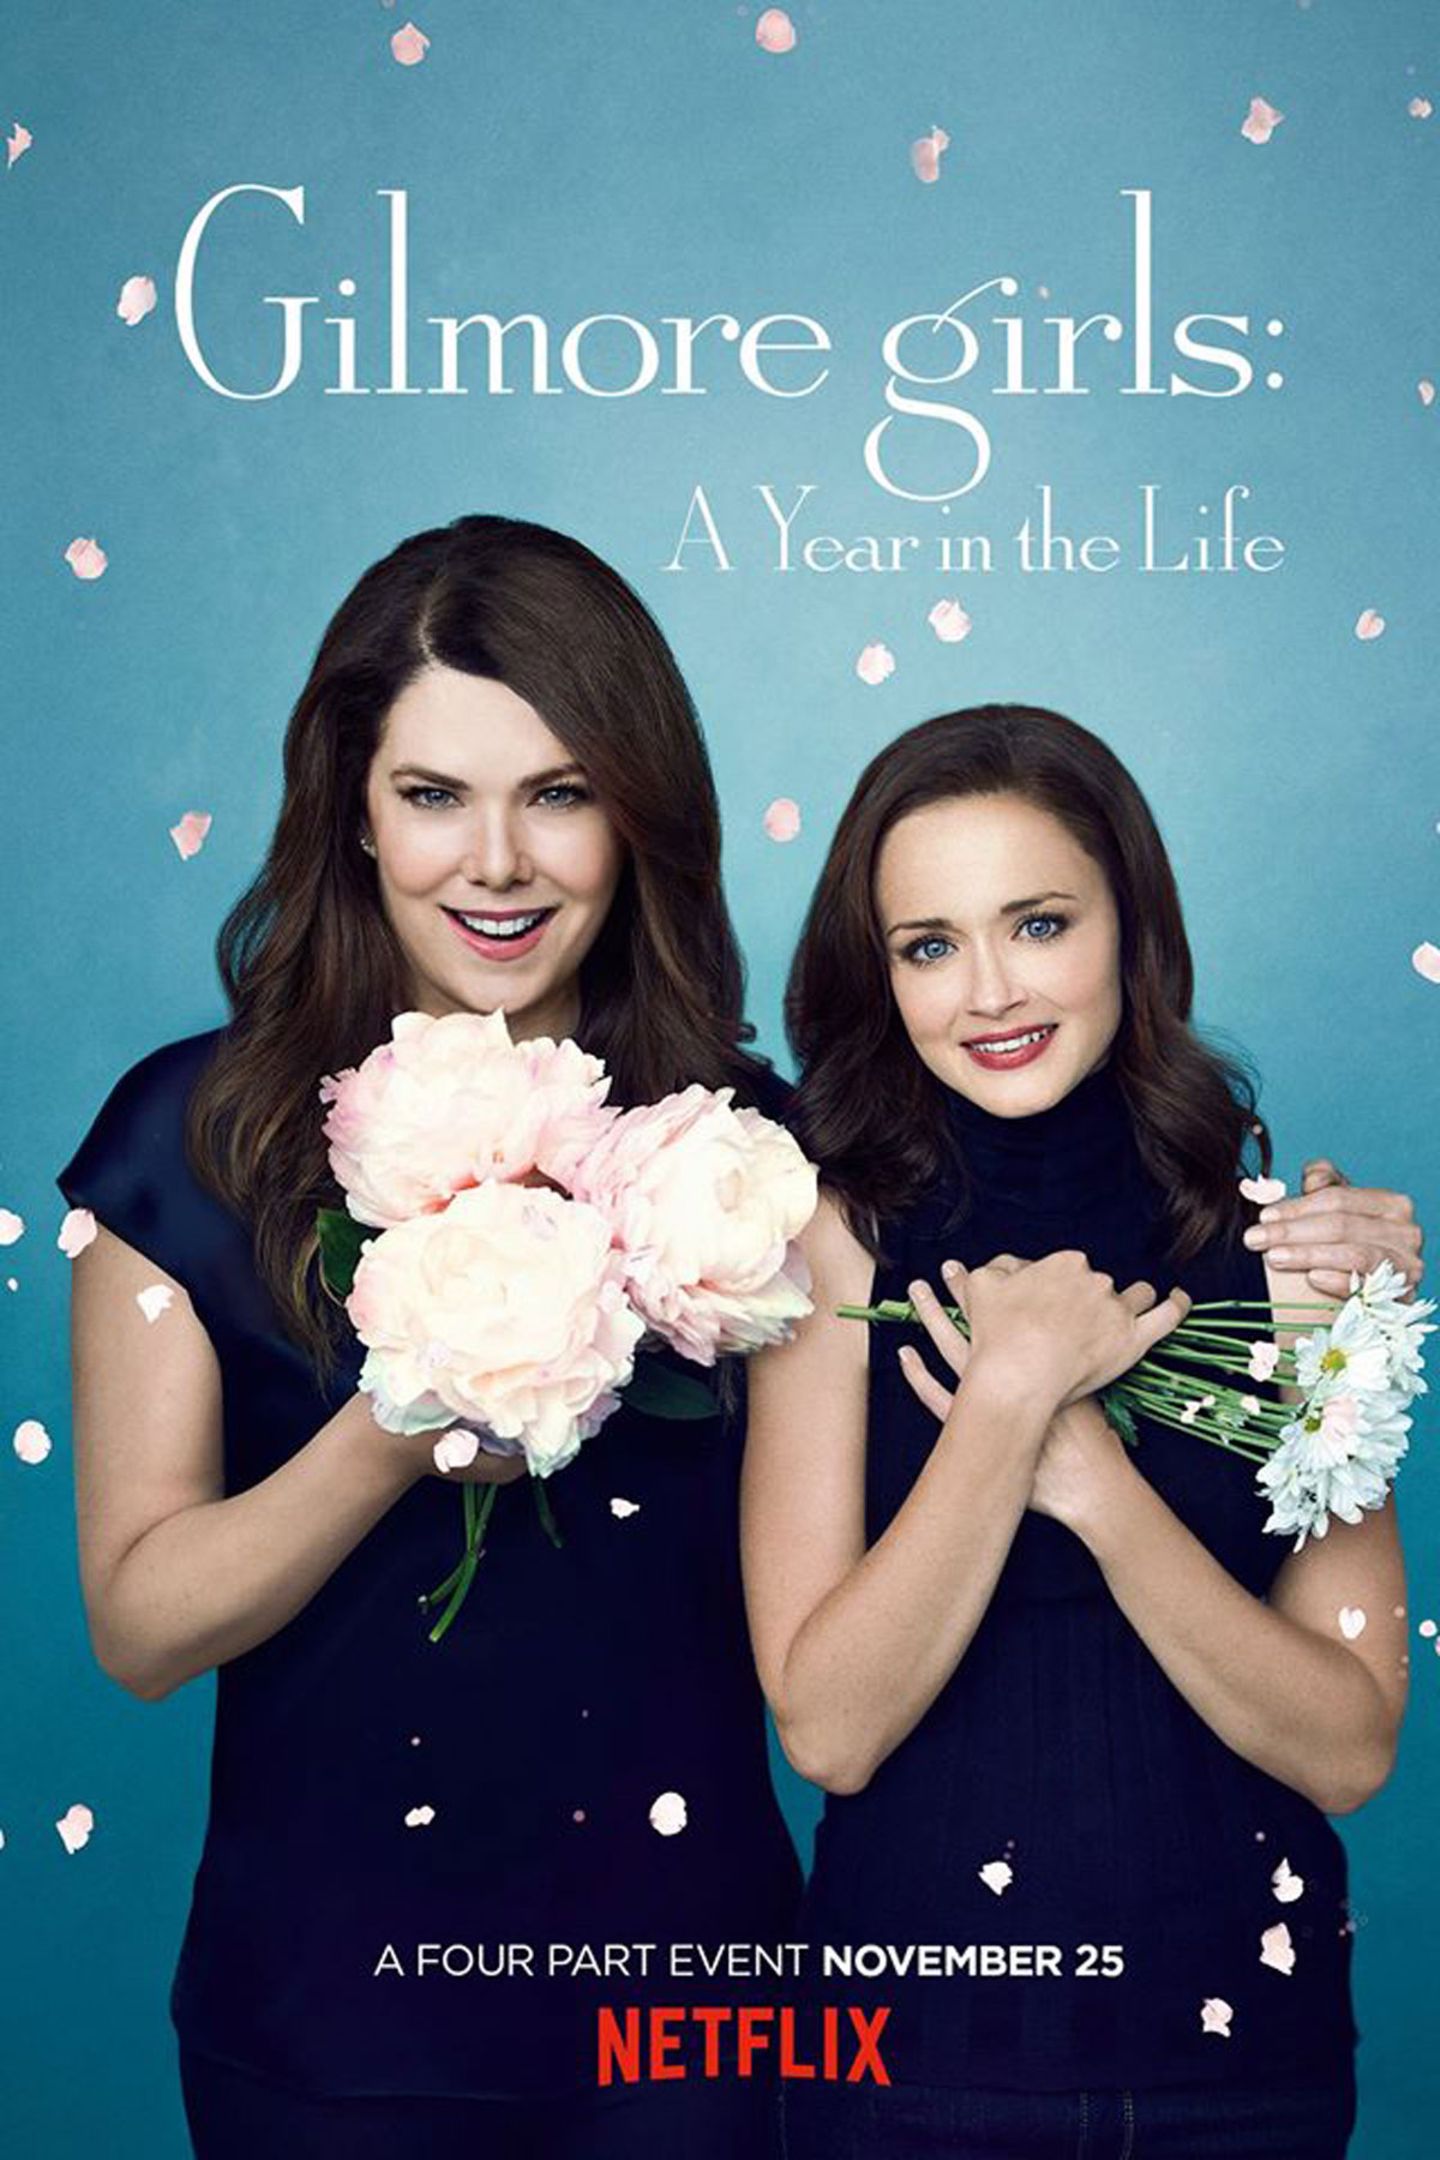 Ein Blütenregen auf dem Frühlingsplakat - dürfen sich Fans etwa über die Hochzeit von Lorelai oder sogar Rory freuen?